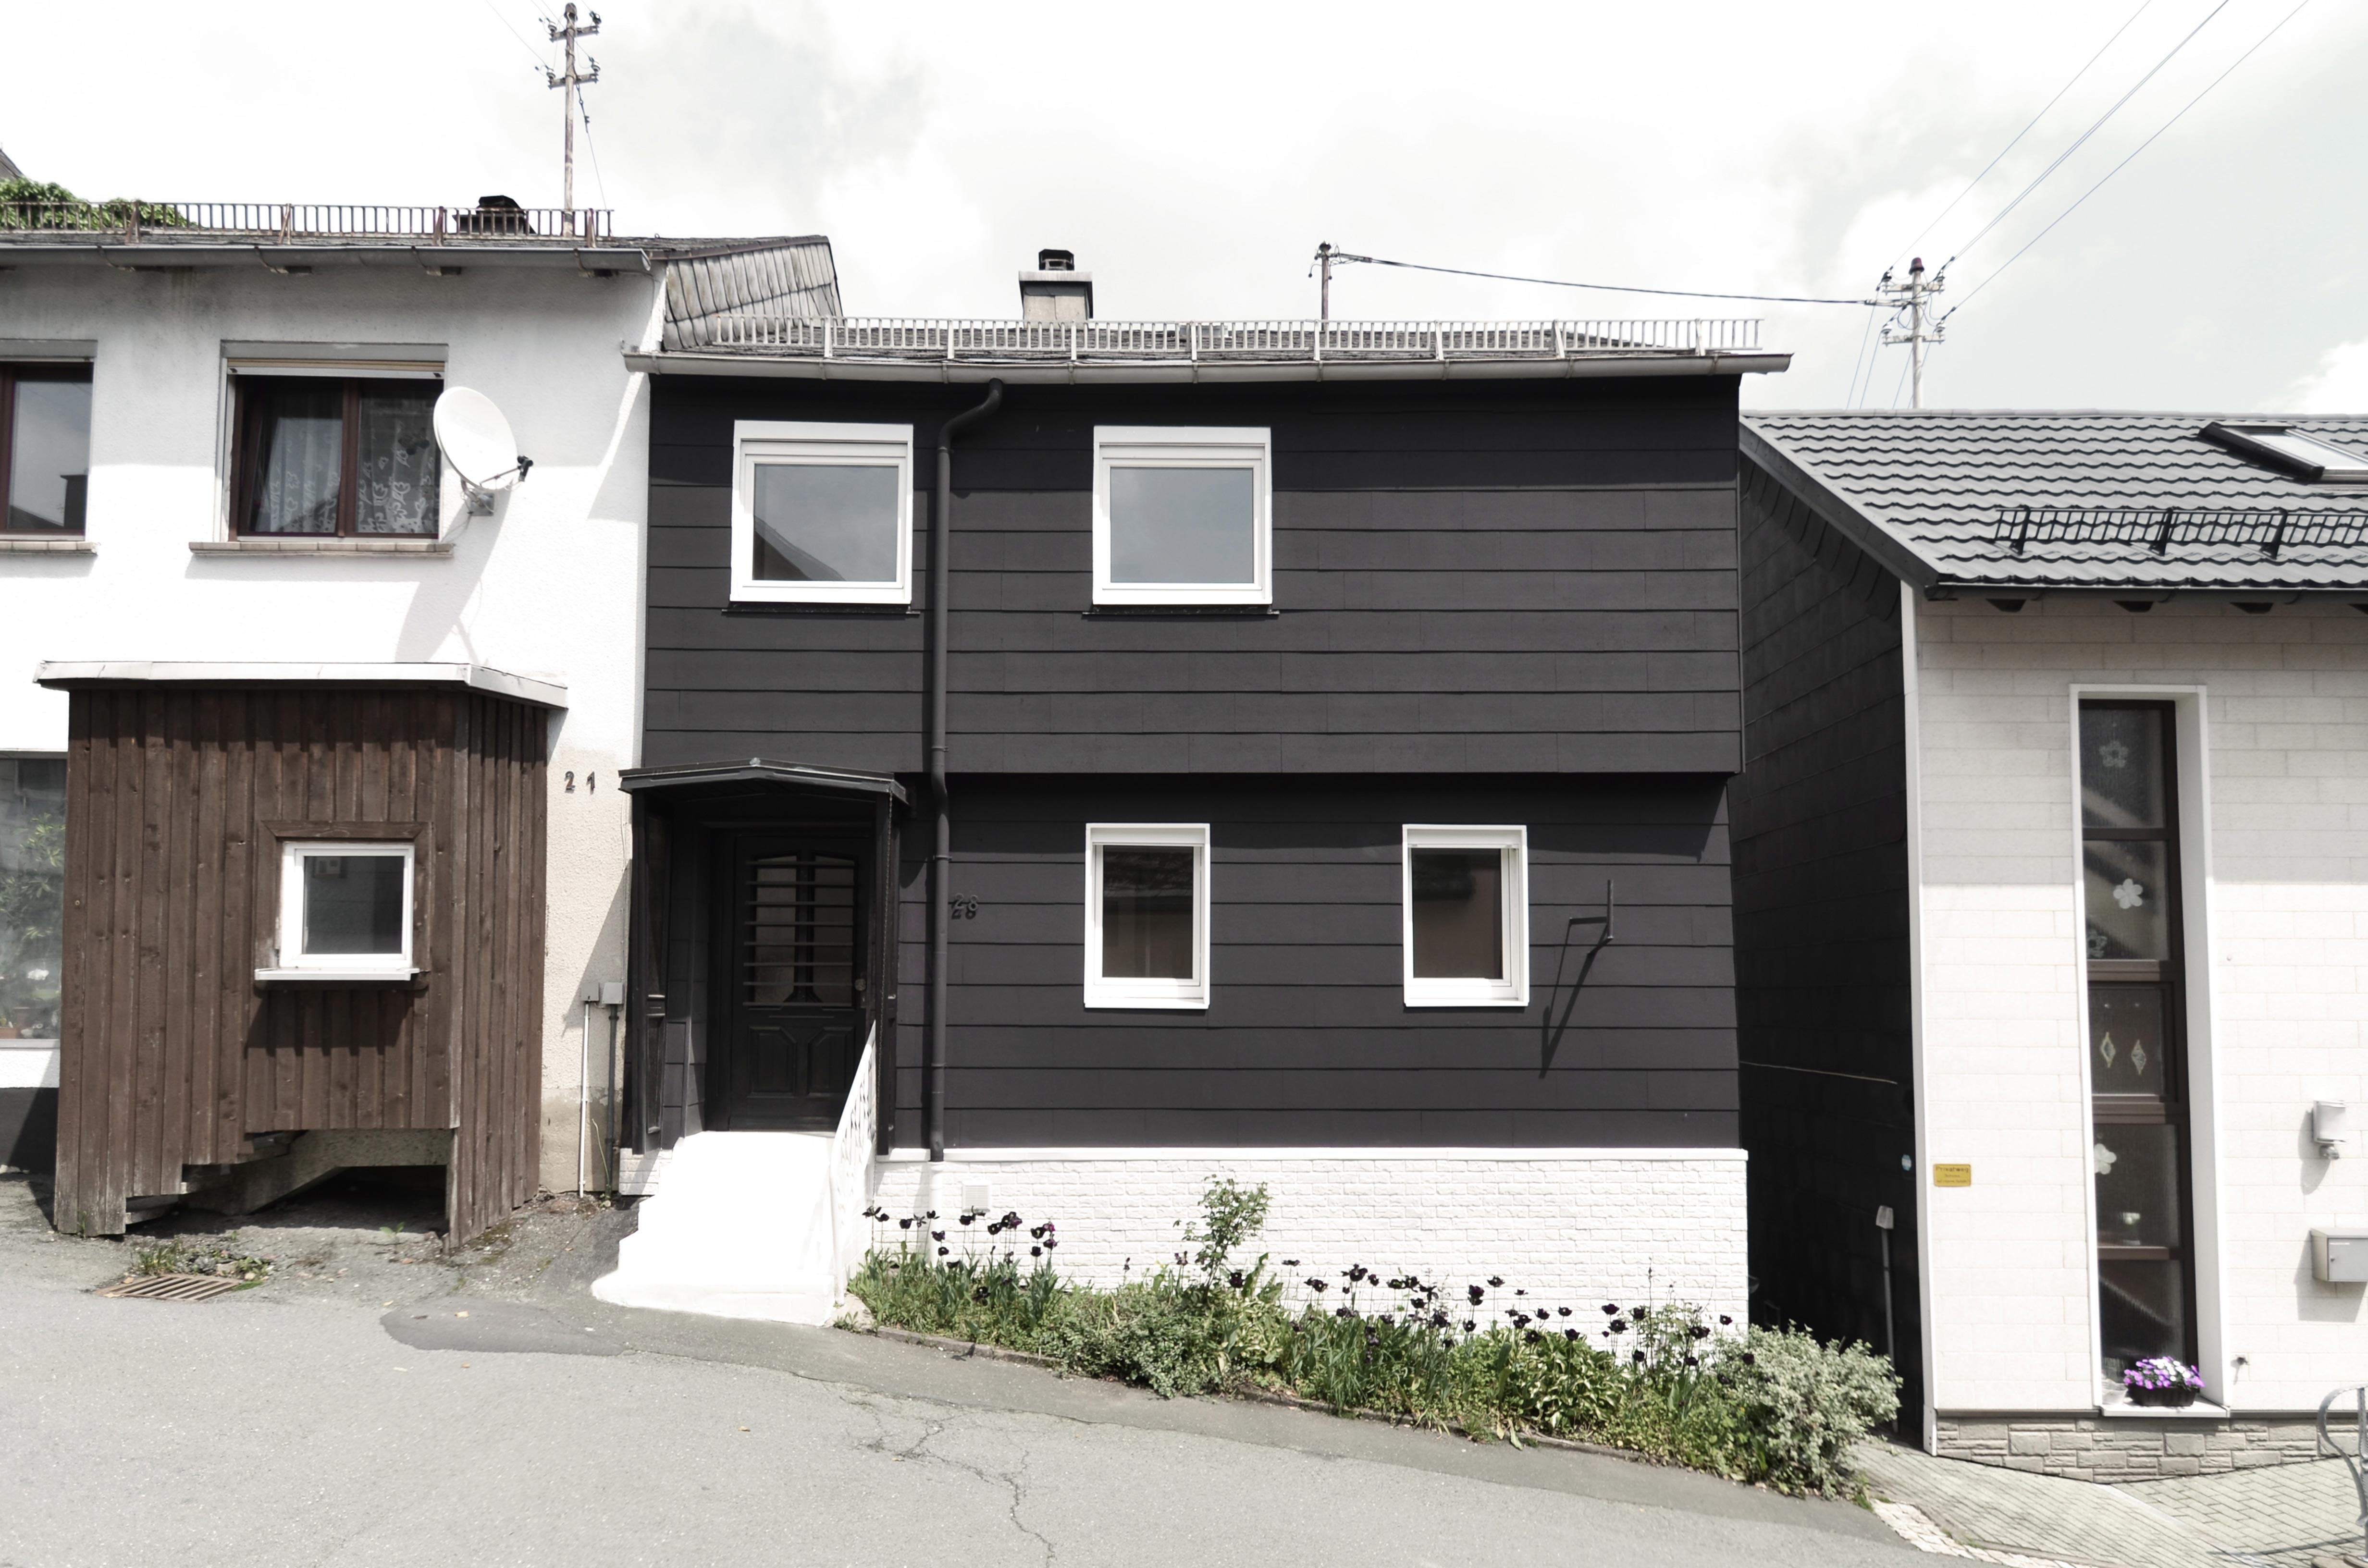 Maison Trouvée, Schaufassade im Kontext mit der Nachbarbebauung (Quelle: Michael Aurel Pichler), 96365 Nordhalben